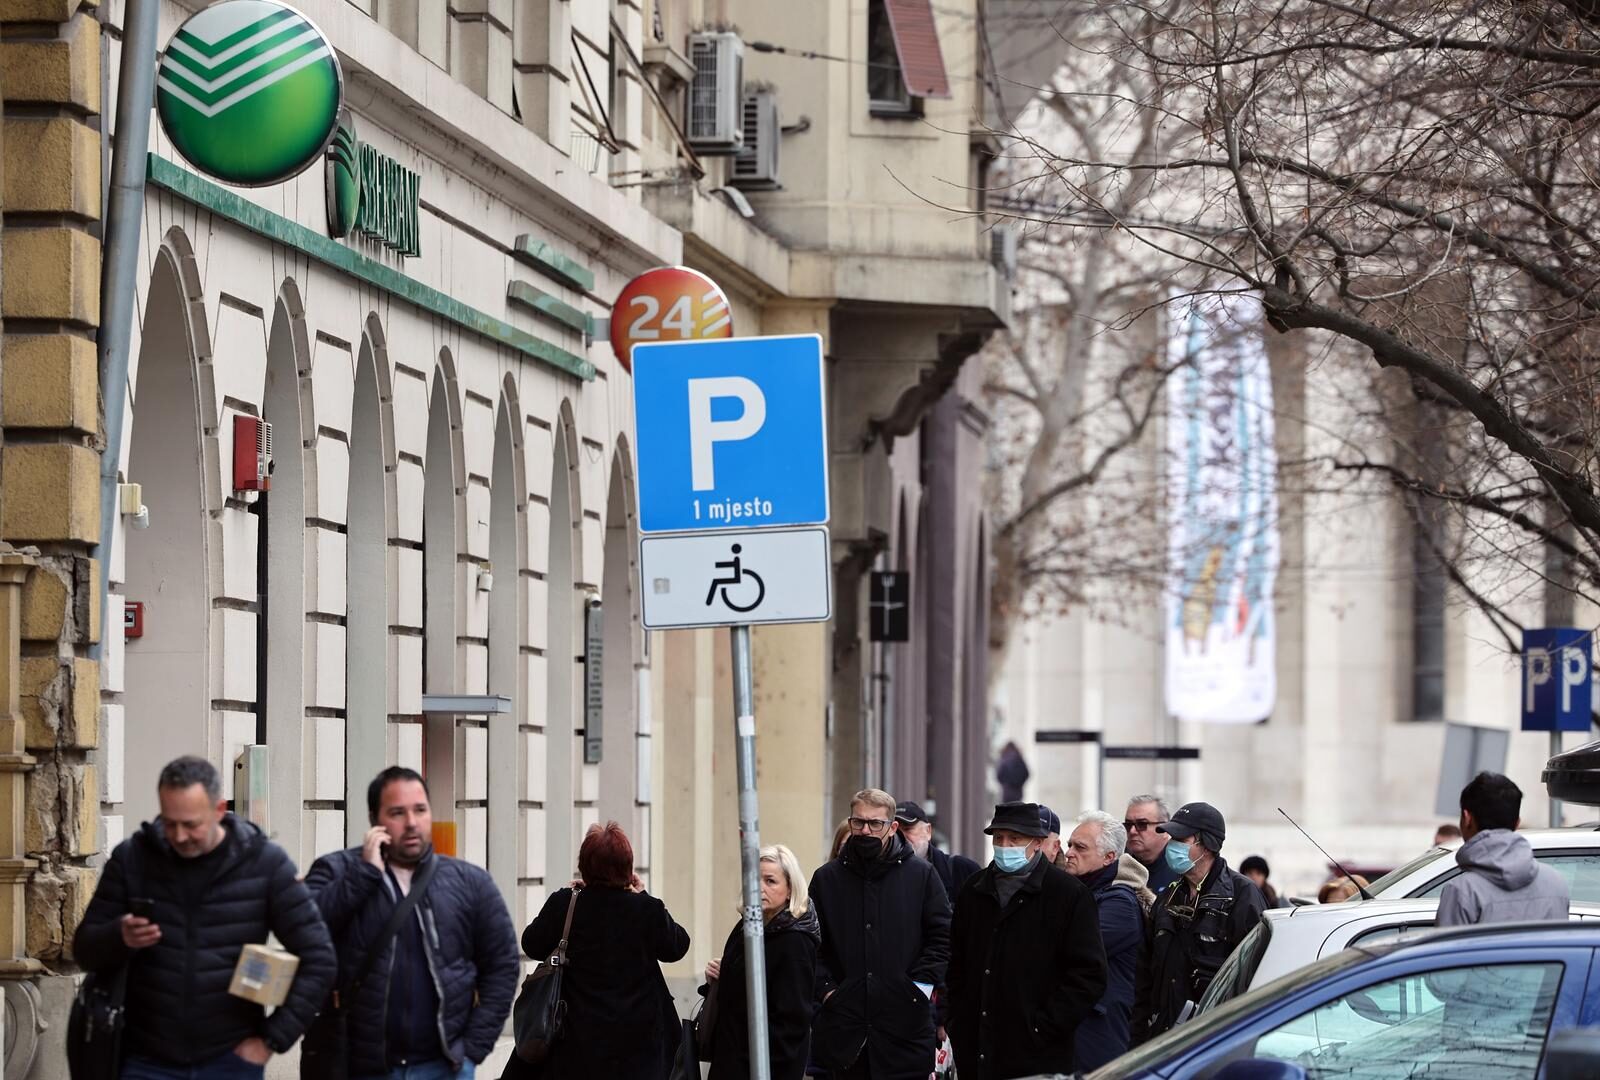 Zagreb: Građani pohrlili u Sberbanku, rusku banku koja se našla na udaru američkih sankcija